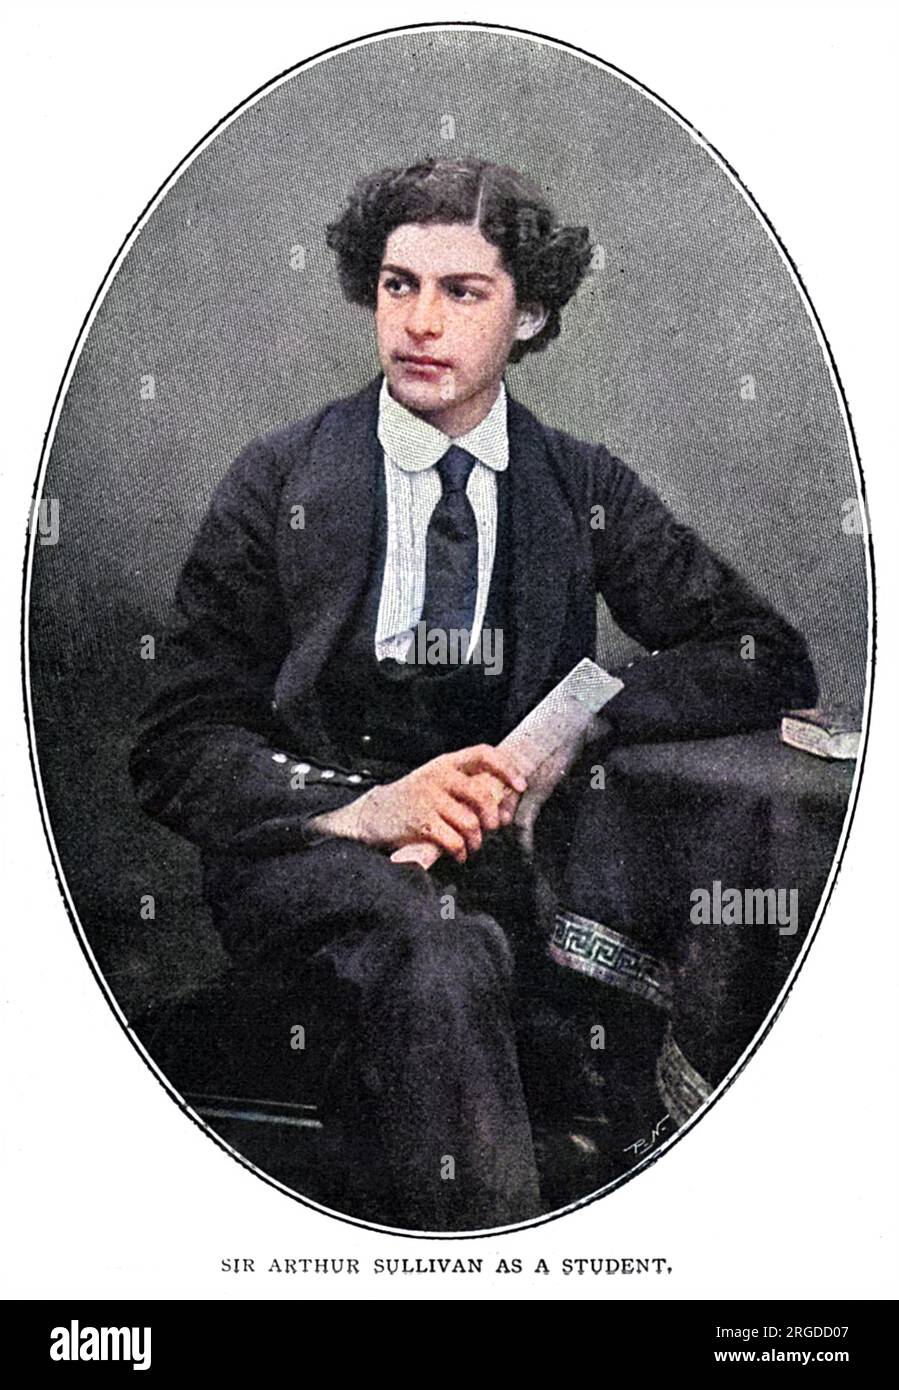 SIR ARTHUR SULLIVAN musicista, associato alle Savoy Opera prodotte con W S Gilbert : fotografato quando uno studente. Foto Stock